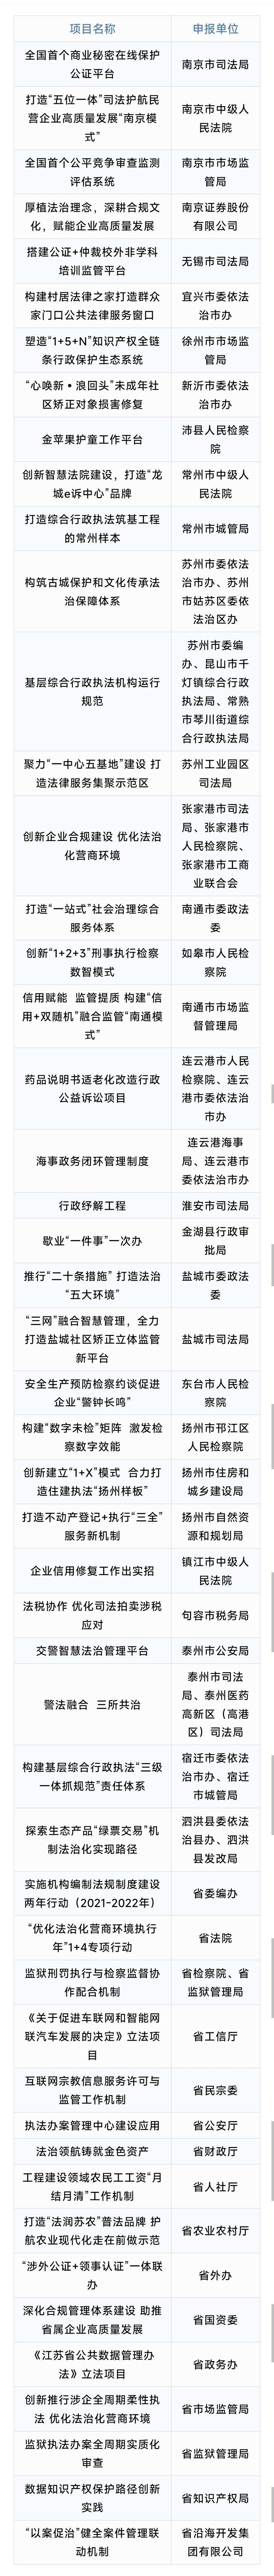 江苏公布50个法治建设创新项目